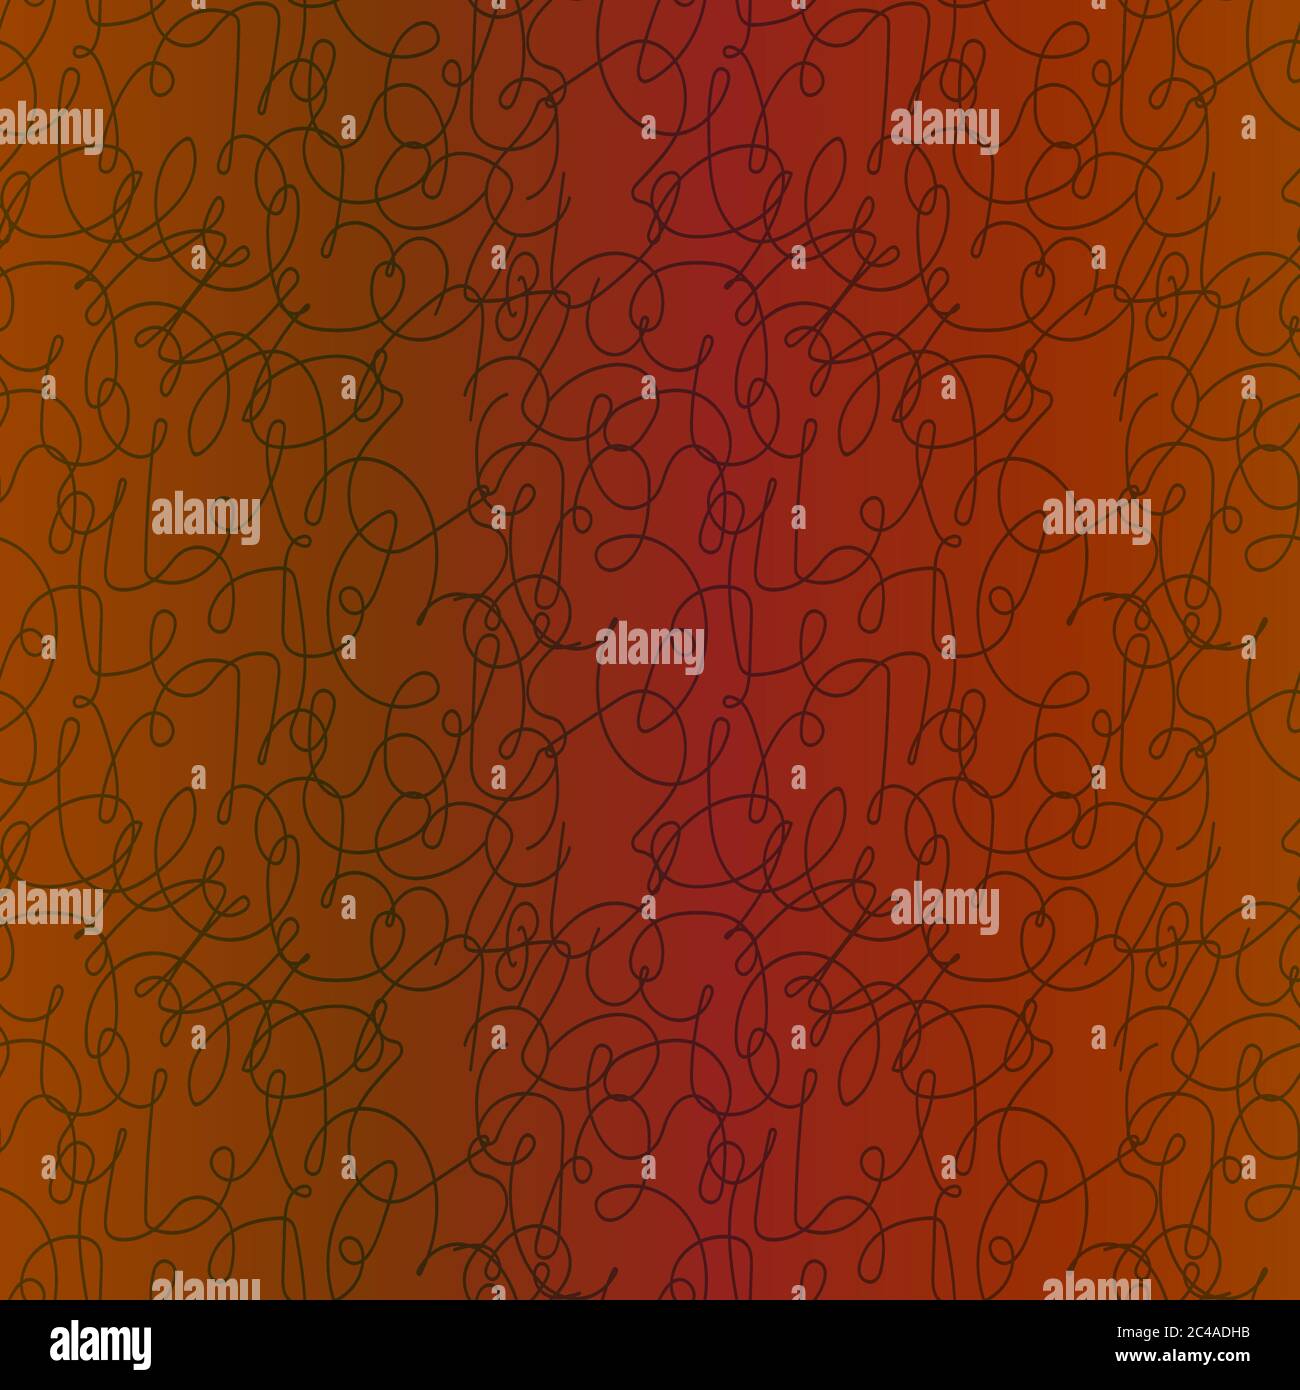 Motif fluide de lignes entrelacées chaotiques de couleur orange muette avec dégradé, illustration à la main Illustration de Vecteur